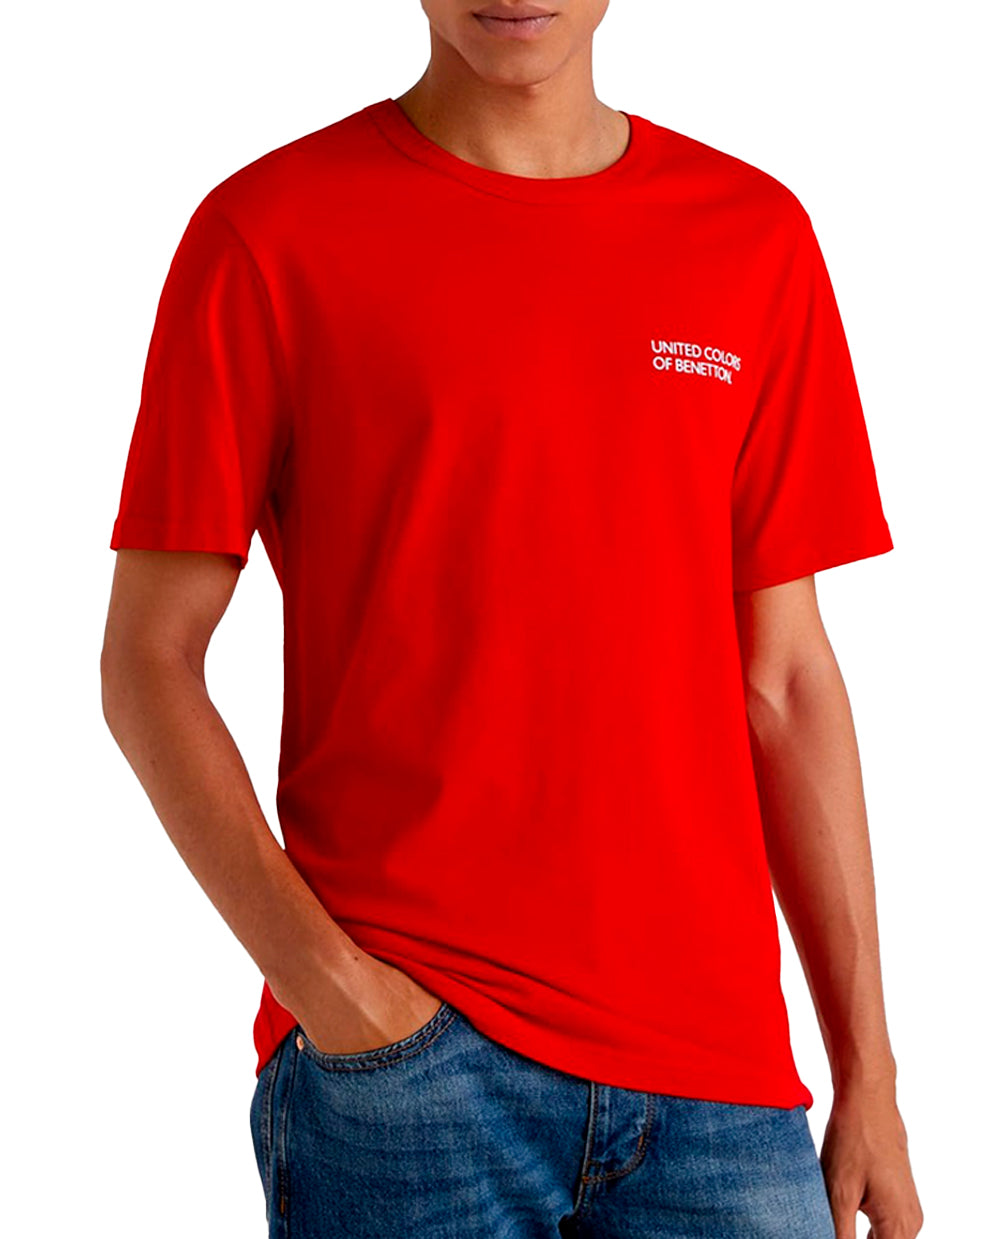 T-Shirt de Hombre letras de Benetton